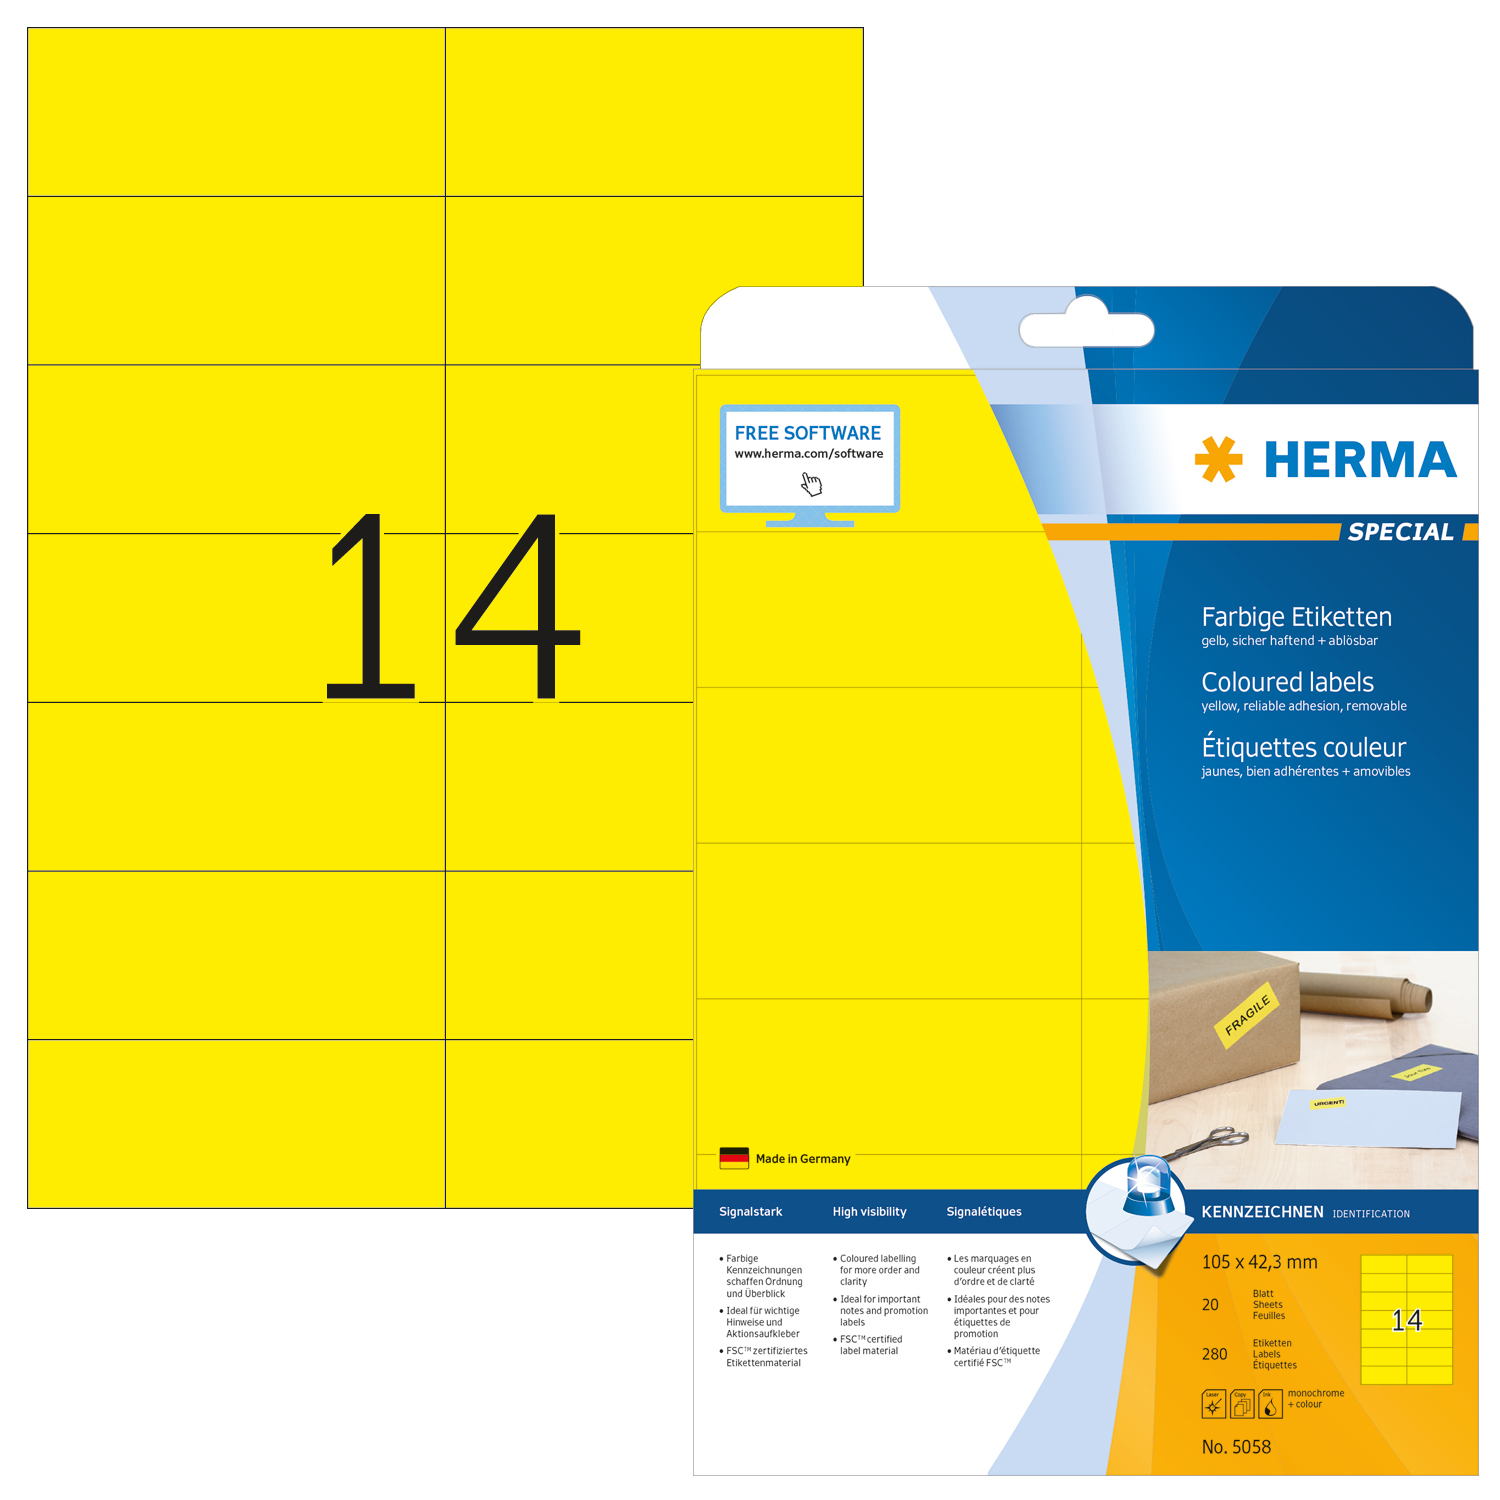 HERMA Etiquettes Special 105×42,3mm 5058 jaune 280 pcs. jaune 280 pcs.